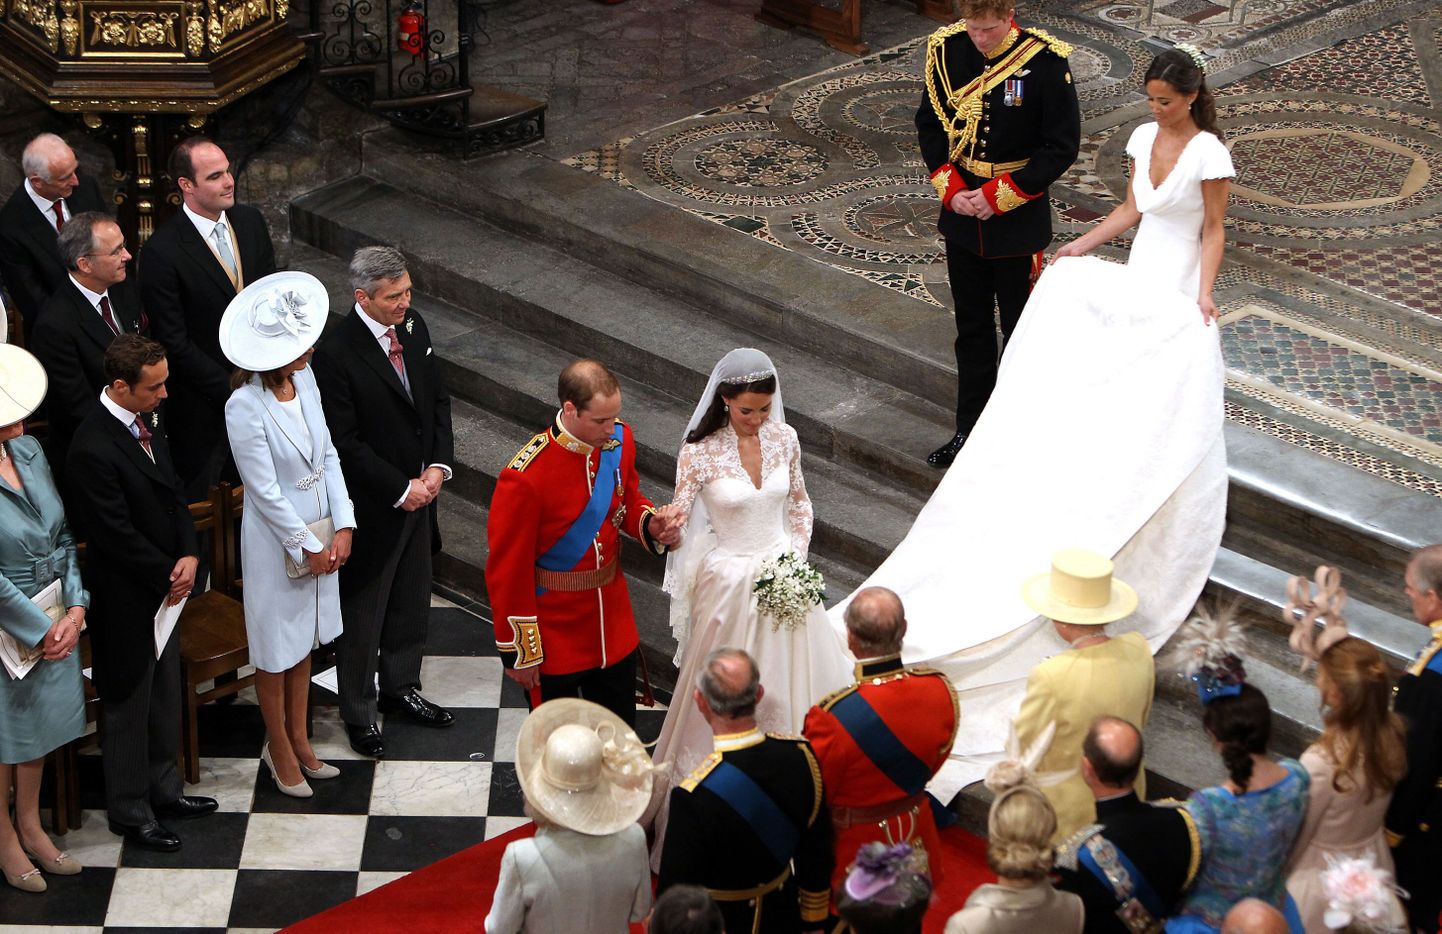 Prints William ja ta abikaasa Cambridge`i hertsoginna kuniganna Elizabeth II ja ja prints Phillipi ees kummardamas